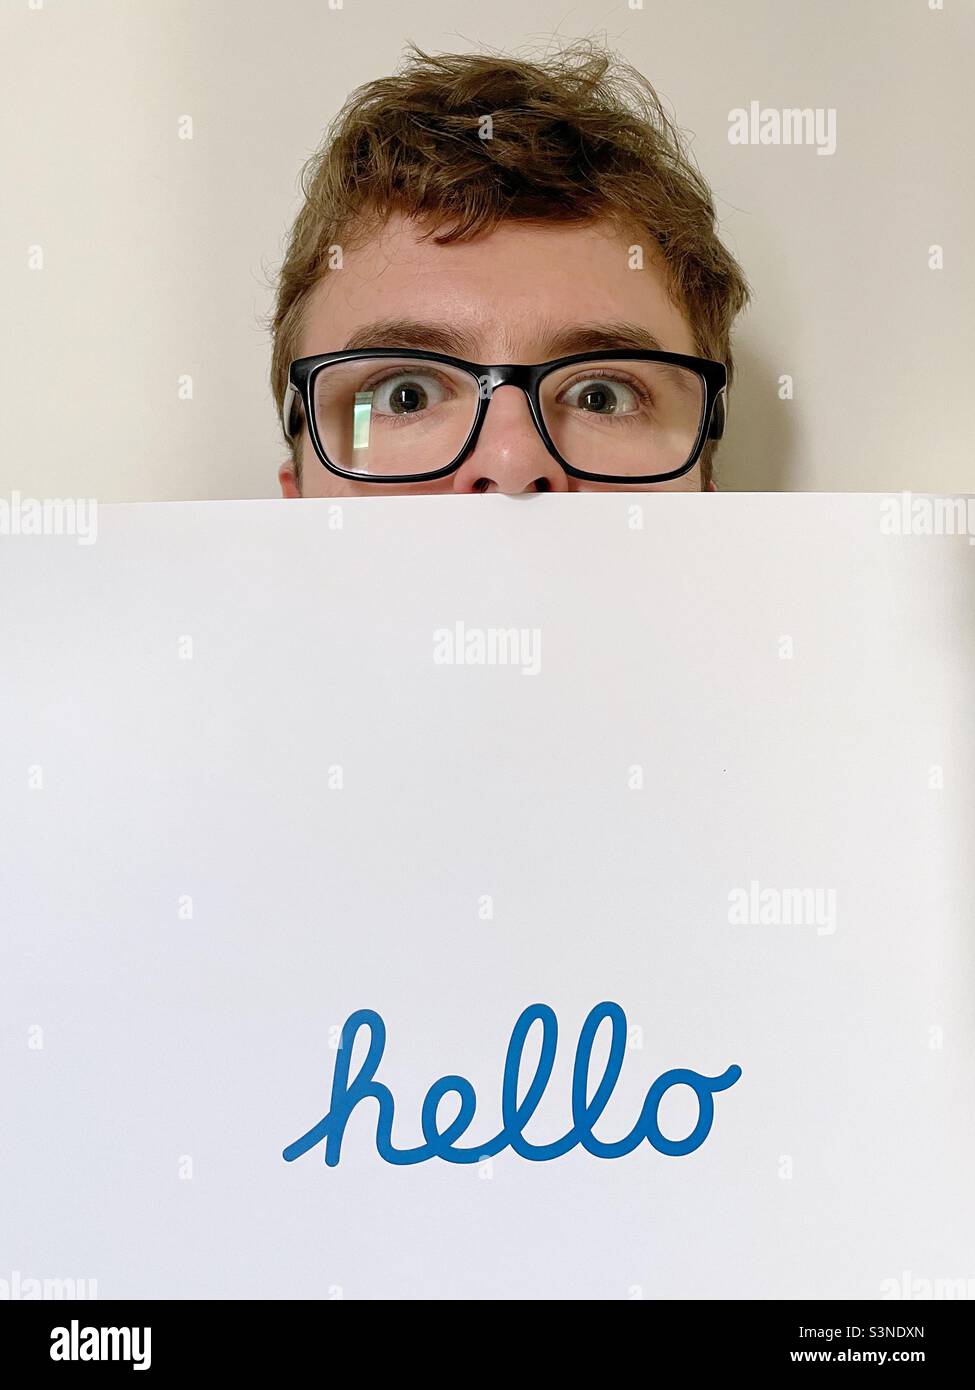 Ein schüchterner und unsicherer junger Mann, der sich hinter einem Hintergrund versteckt, mit dem Wort „Hallo“, das während einer Einführung im Text geschrieben wurde Stockfoto